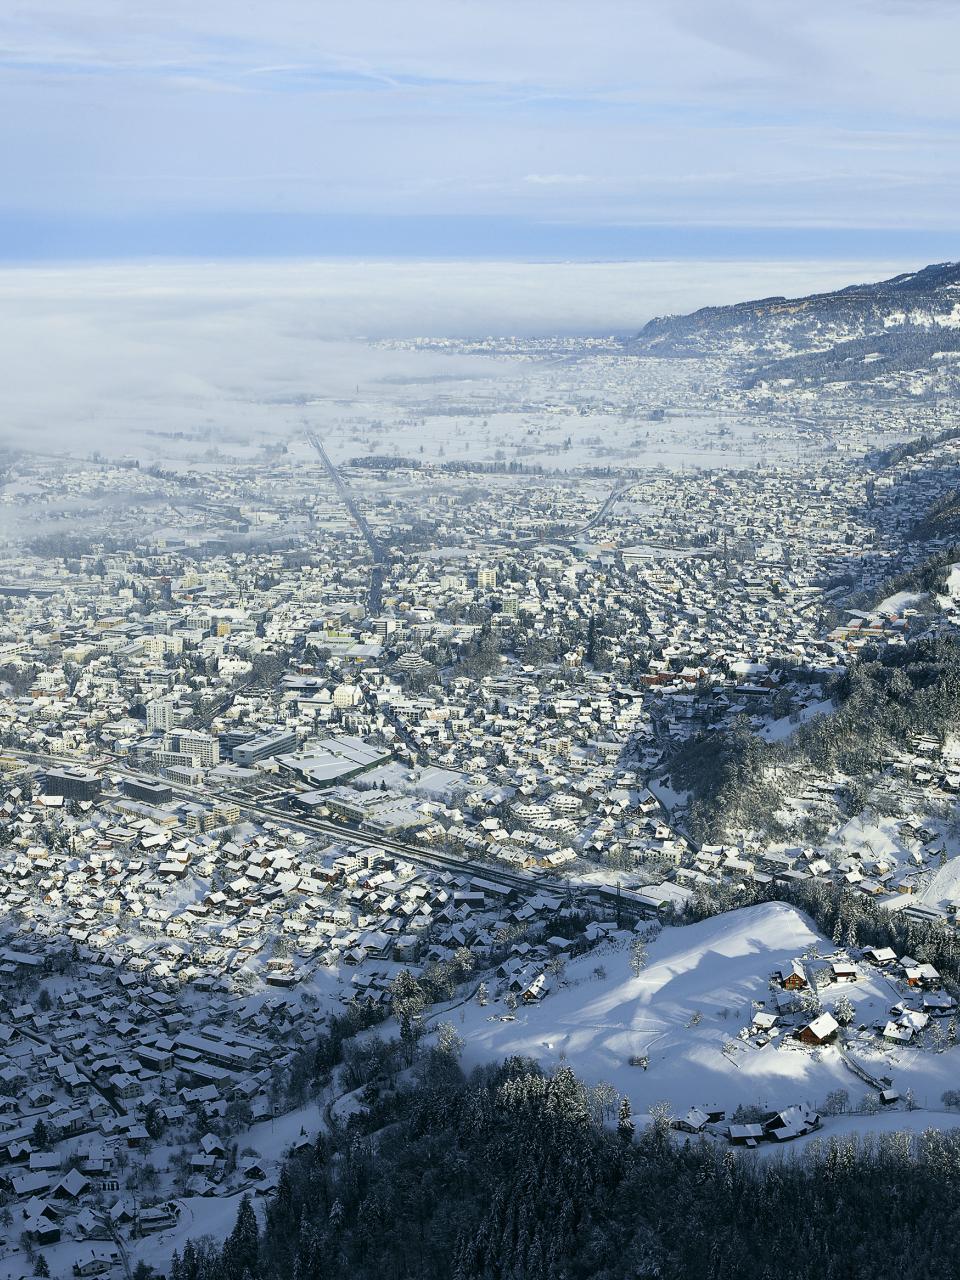 Panoramaausblick vom Karren im Winter